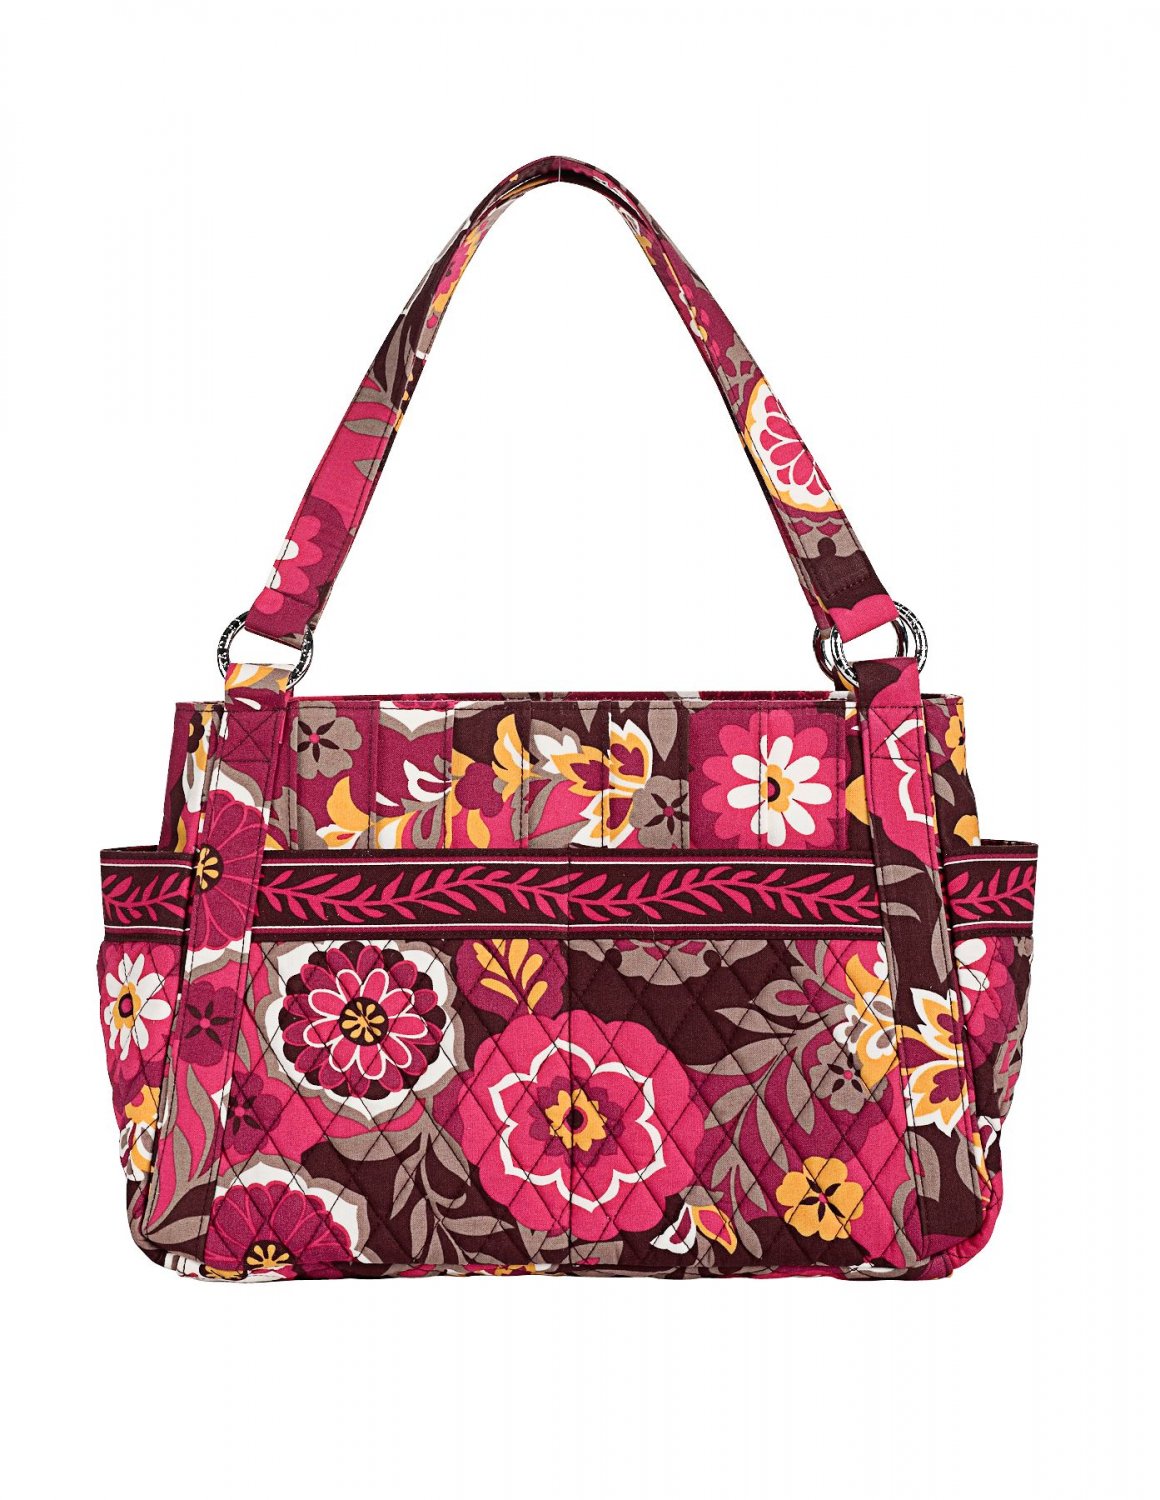 Vera Bradley Purse Handbag Hand Bag Stephanie Carnaby $68 NEW